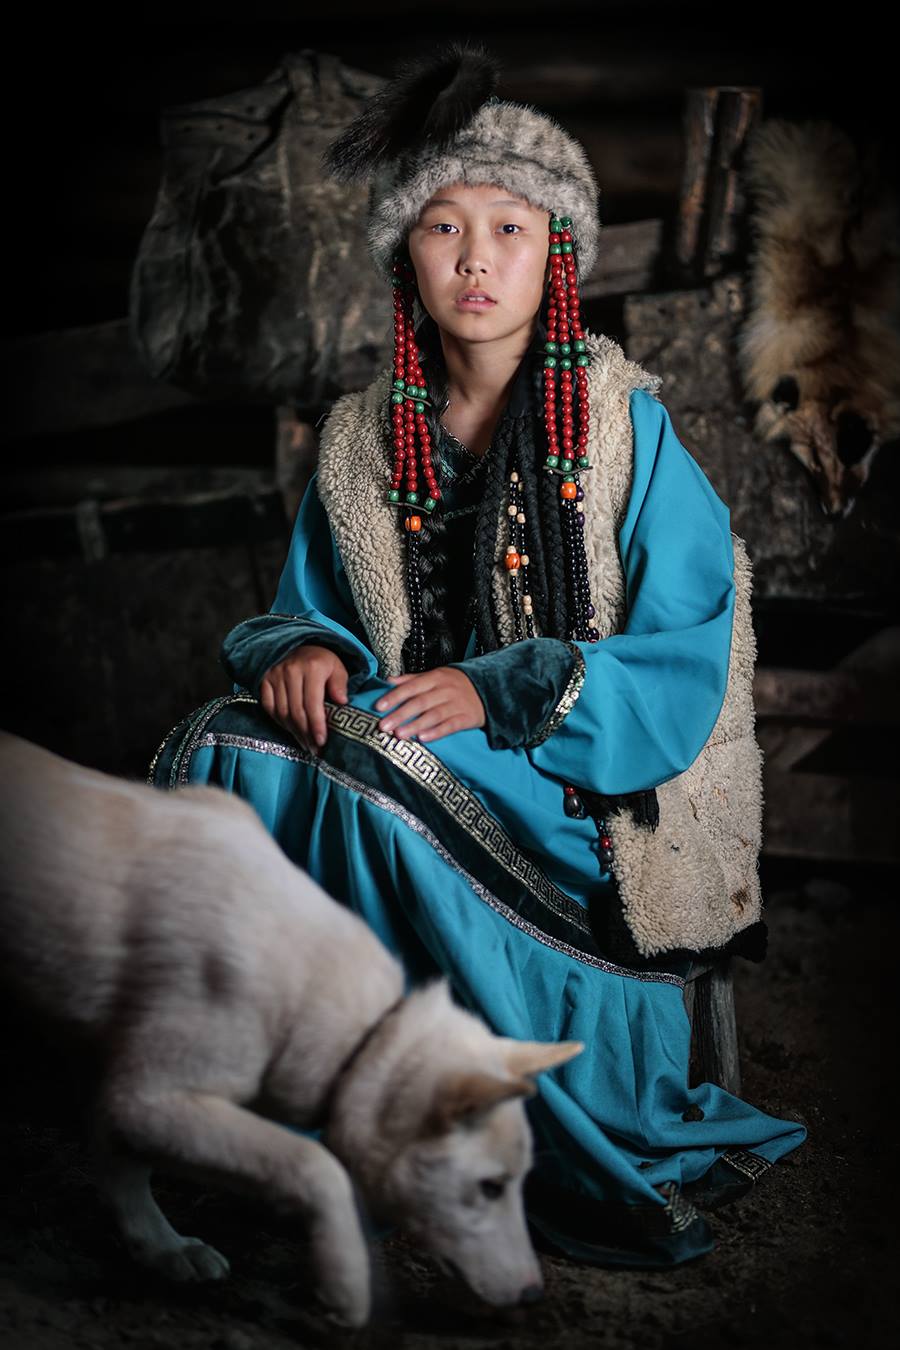 17 представителей коренных народностей Сибири: фотосессия в национальных костюмах 56